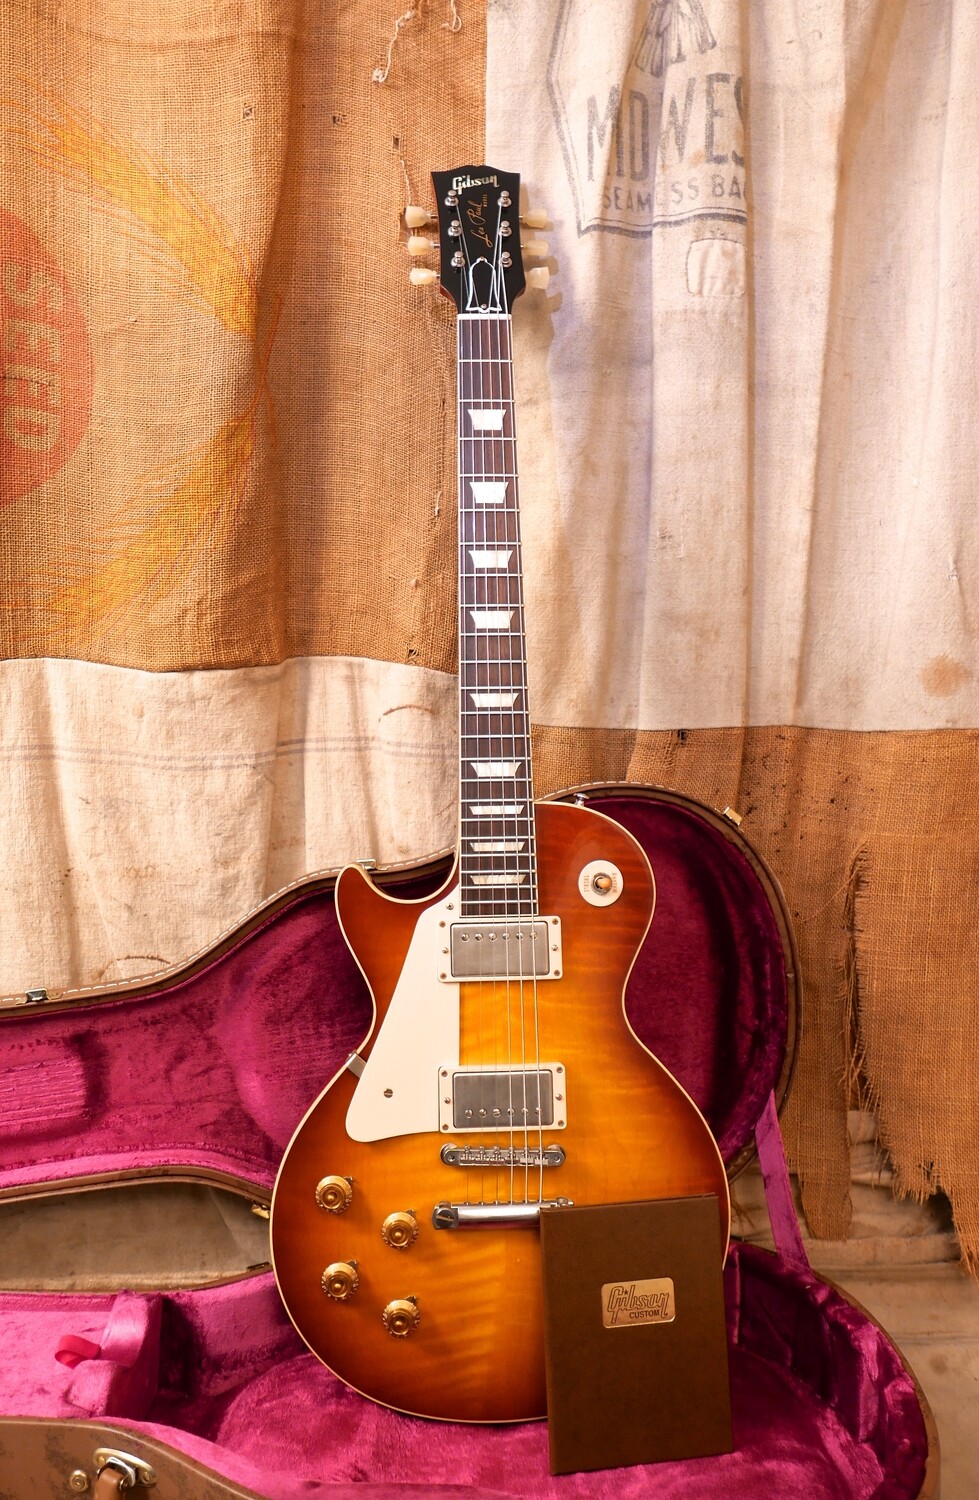 2013 Gibson R8 '58 RI Les Paul Standard Sunburst Left Handed